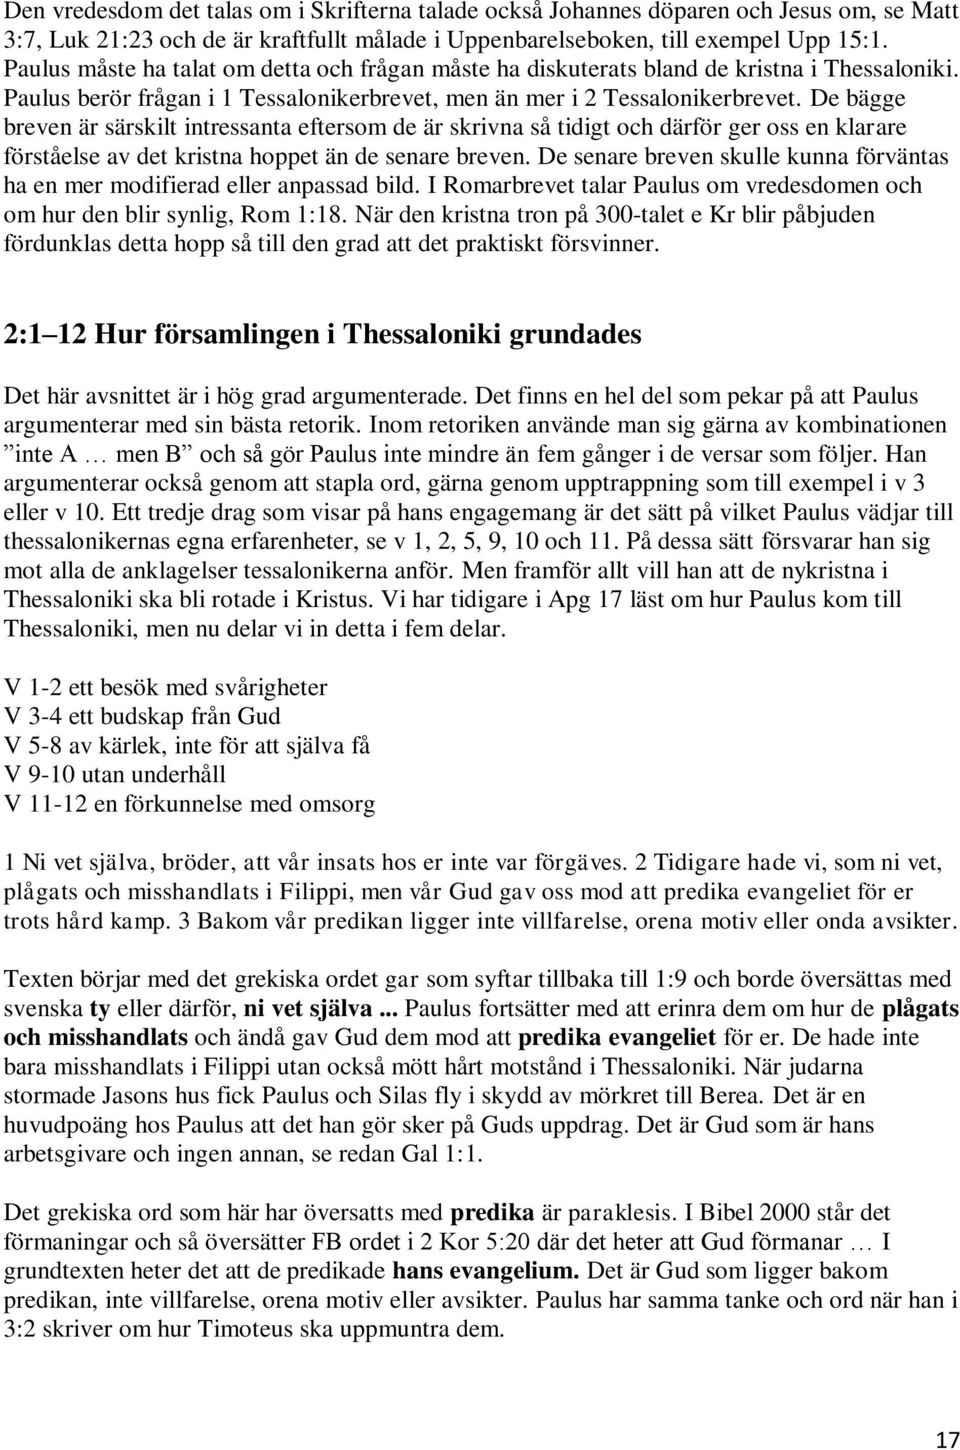 1 Tessalonikerbrevet. en bibelteologisk kommentar av Håkan Sunnliden - PDF  Gratis nedladdning